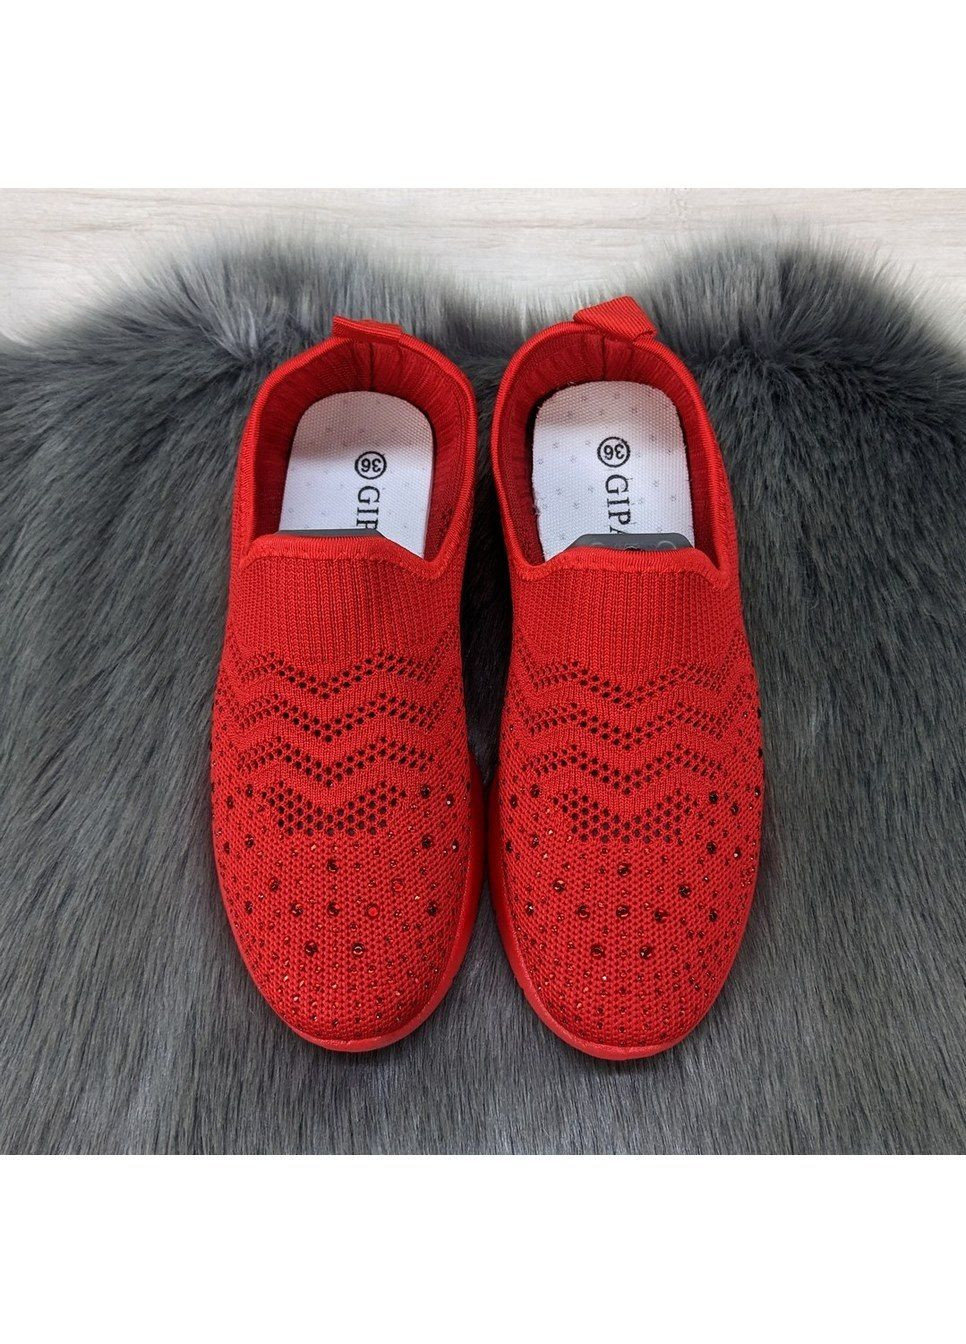 Червоні літні кросівки жіночі текстильні без шнурків Gipanis